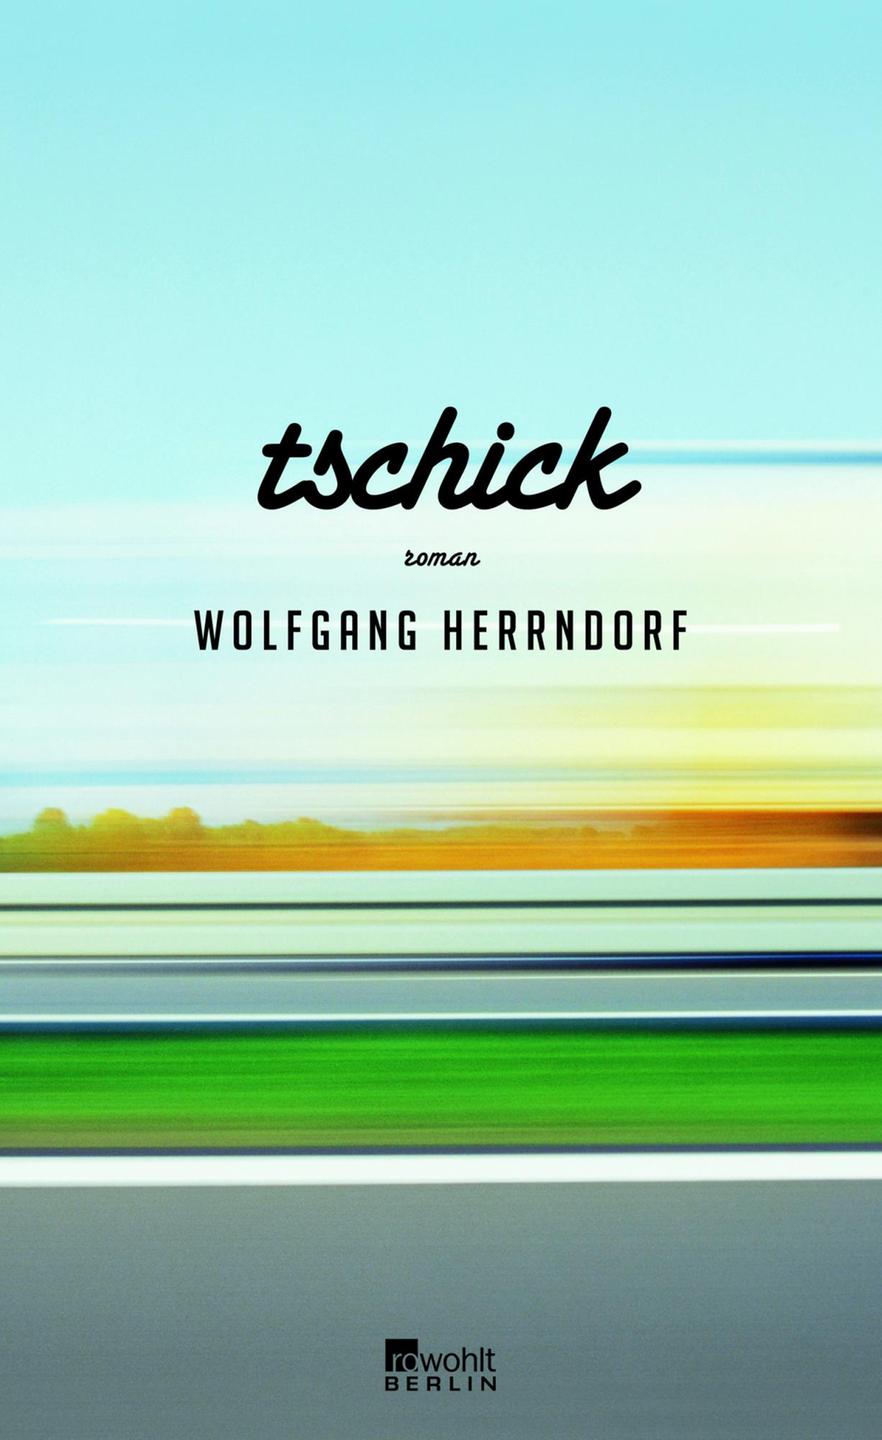 Cover von Wolfgang Herrndorf: "Tschick"